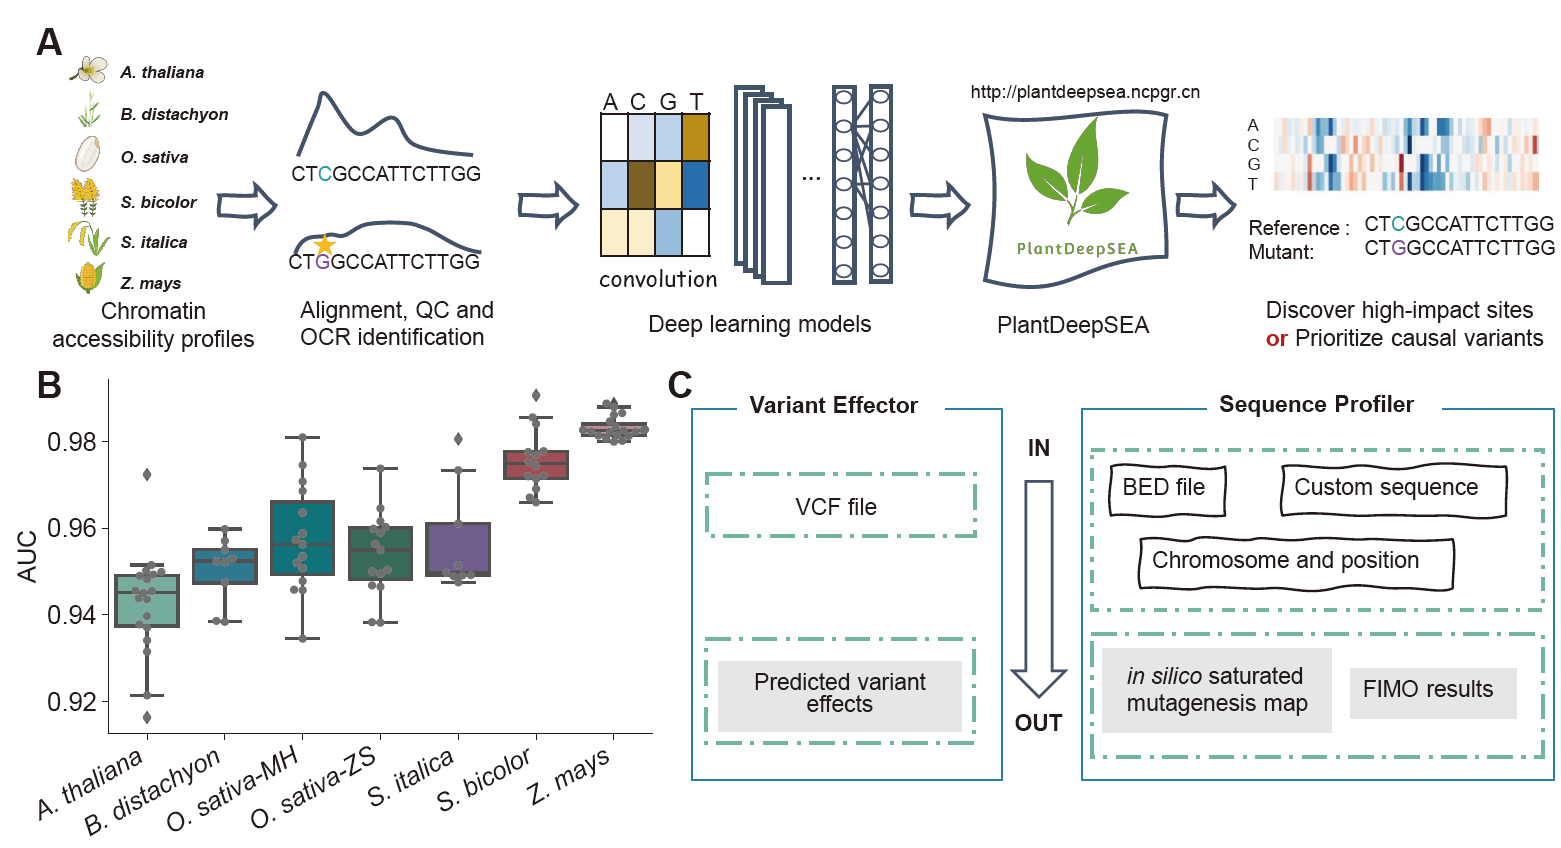 水稻团队发布基于深度学习模型预测植物基因组序列变异调控效应的网络服务